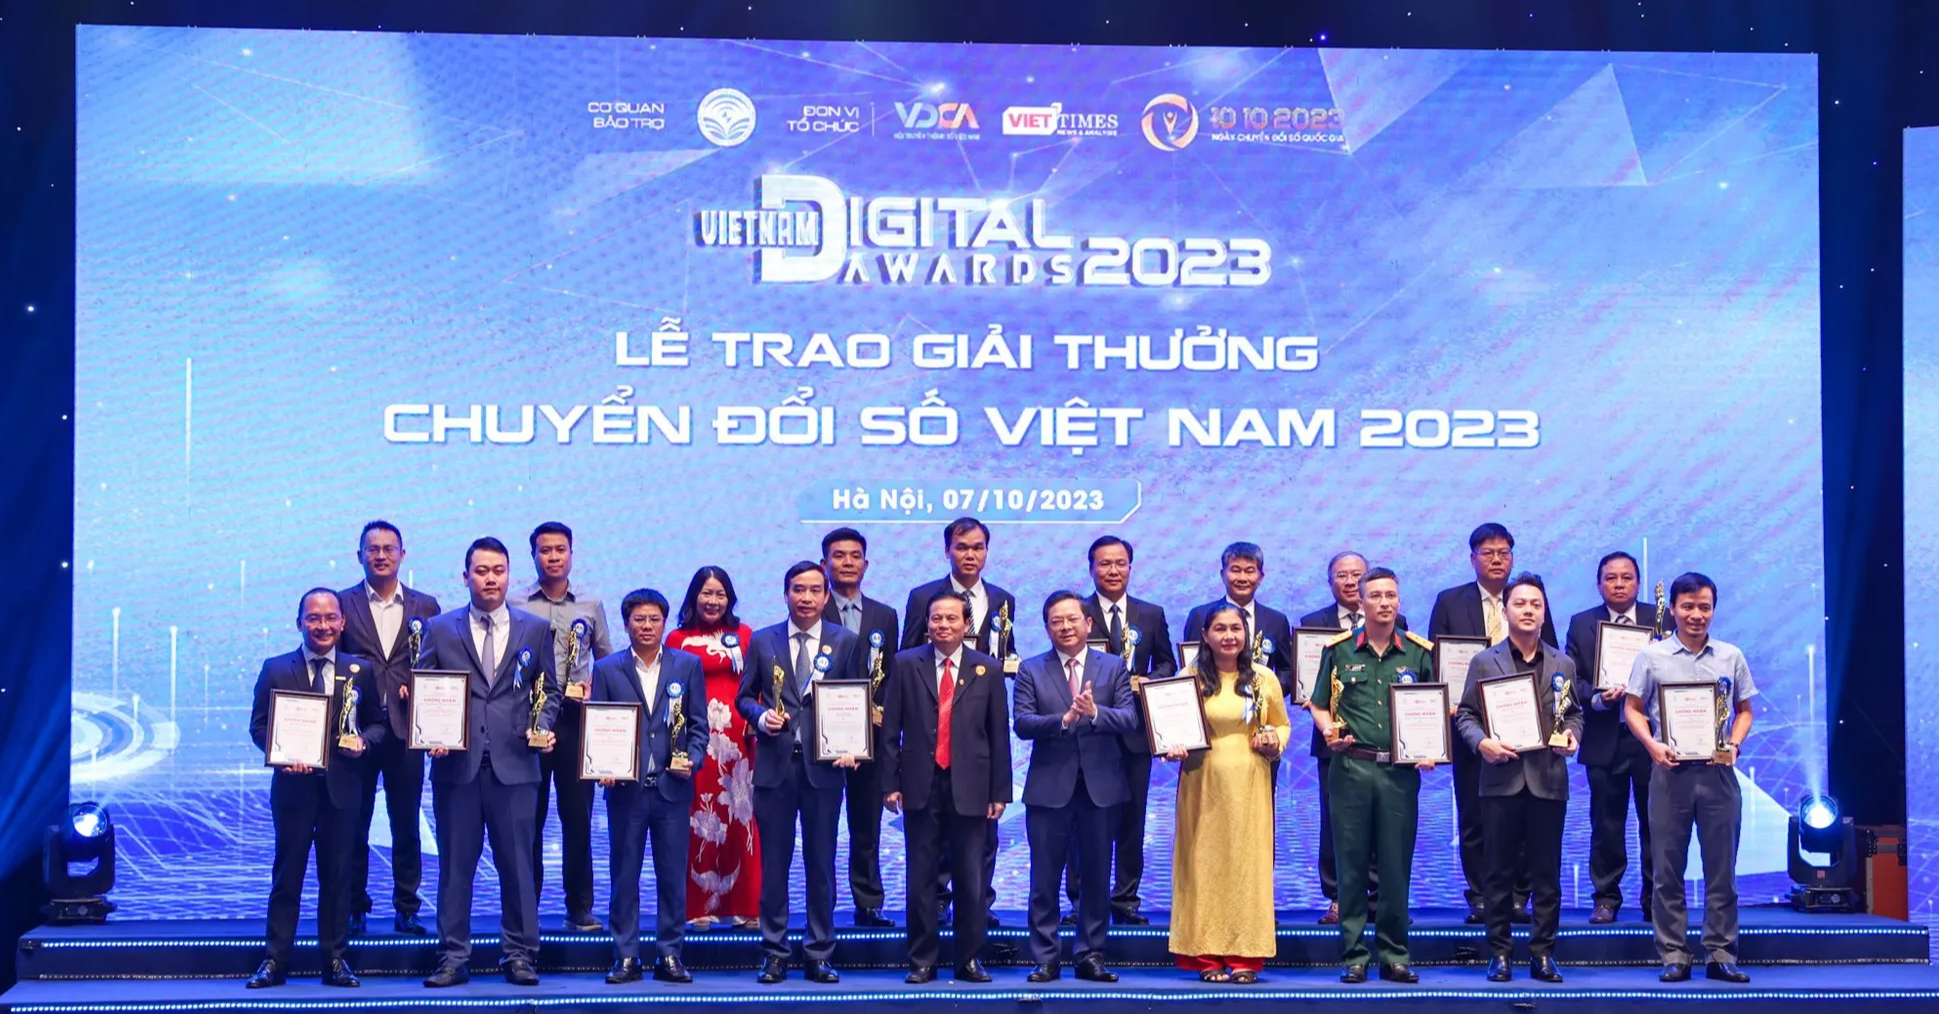 Vietnam Digital Awards 2023